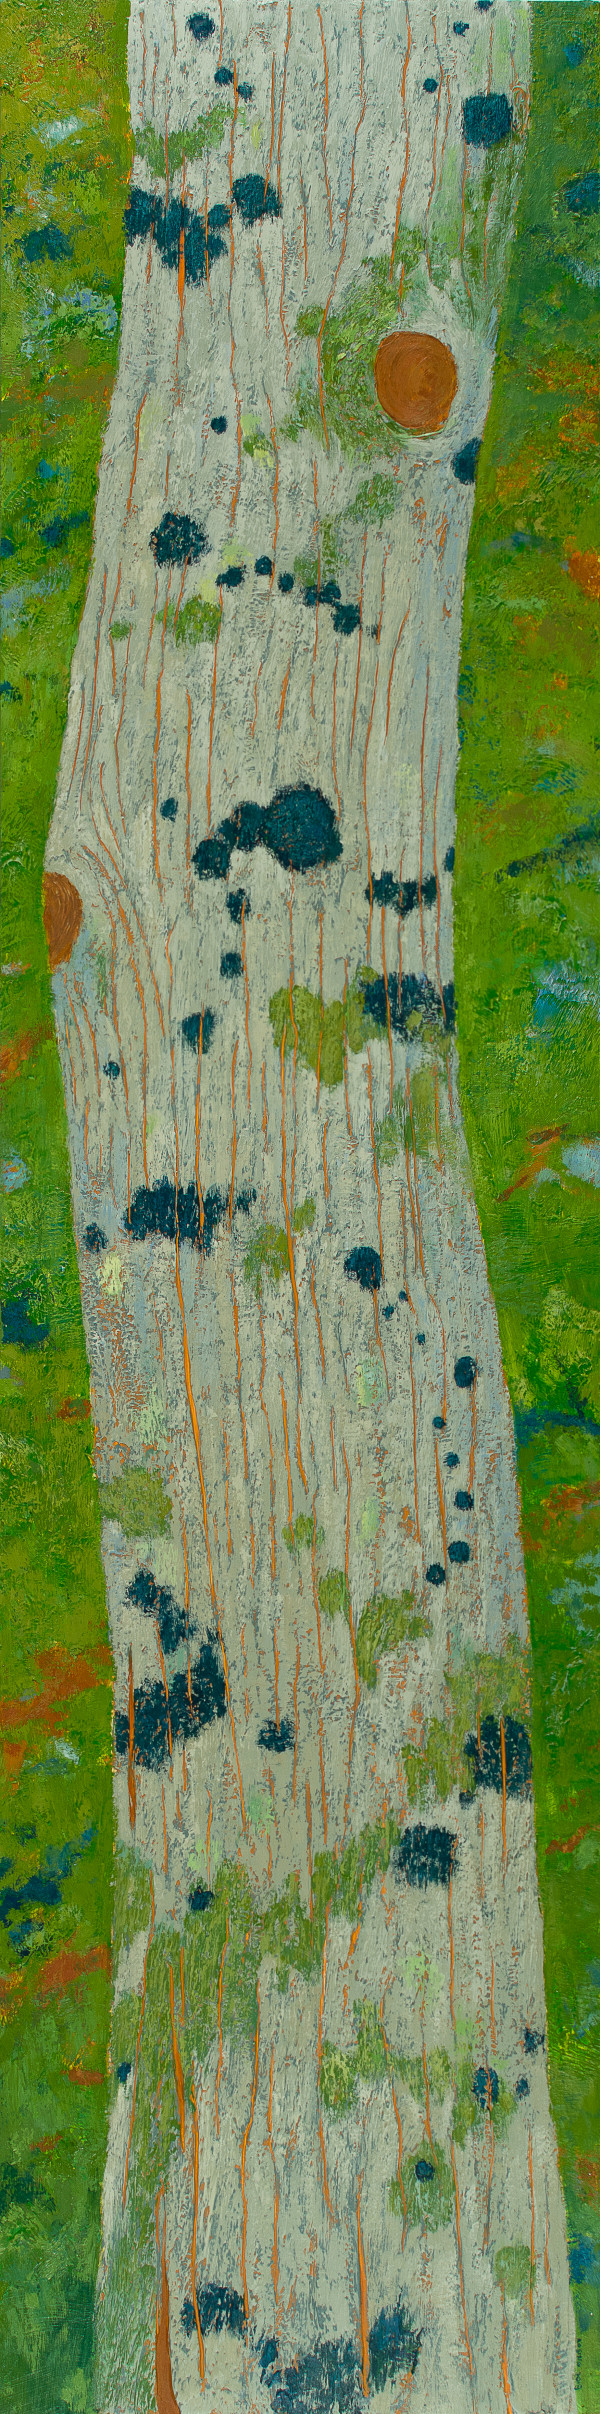 Blue Lichen, Eastern Hemlock by Katherine Steichen Rosing